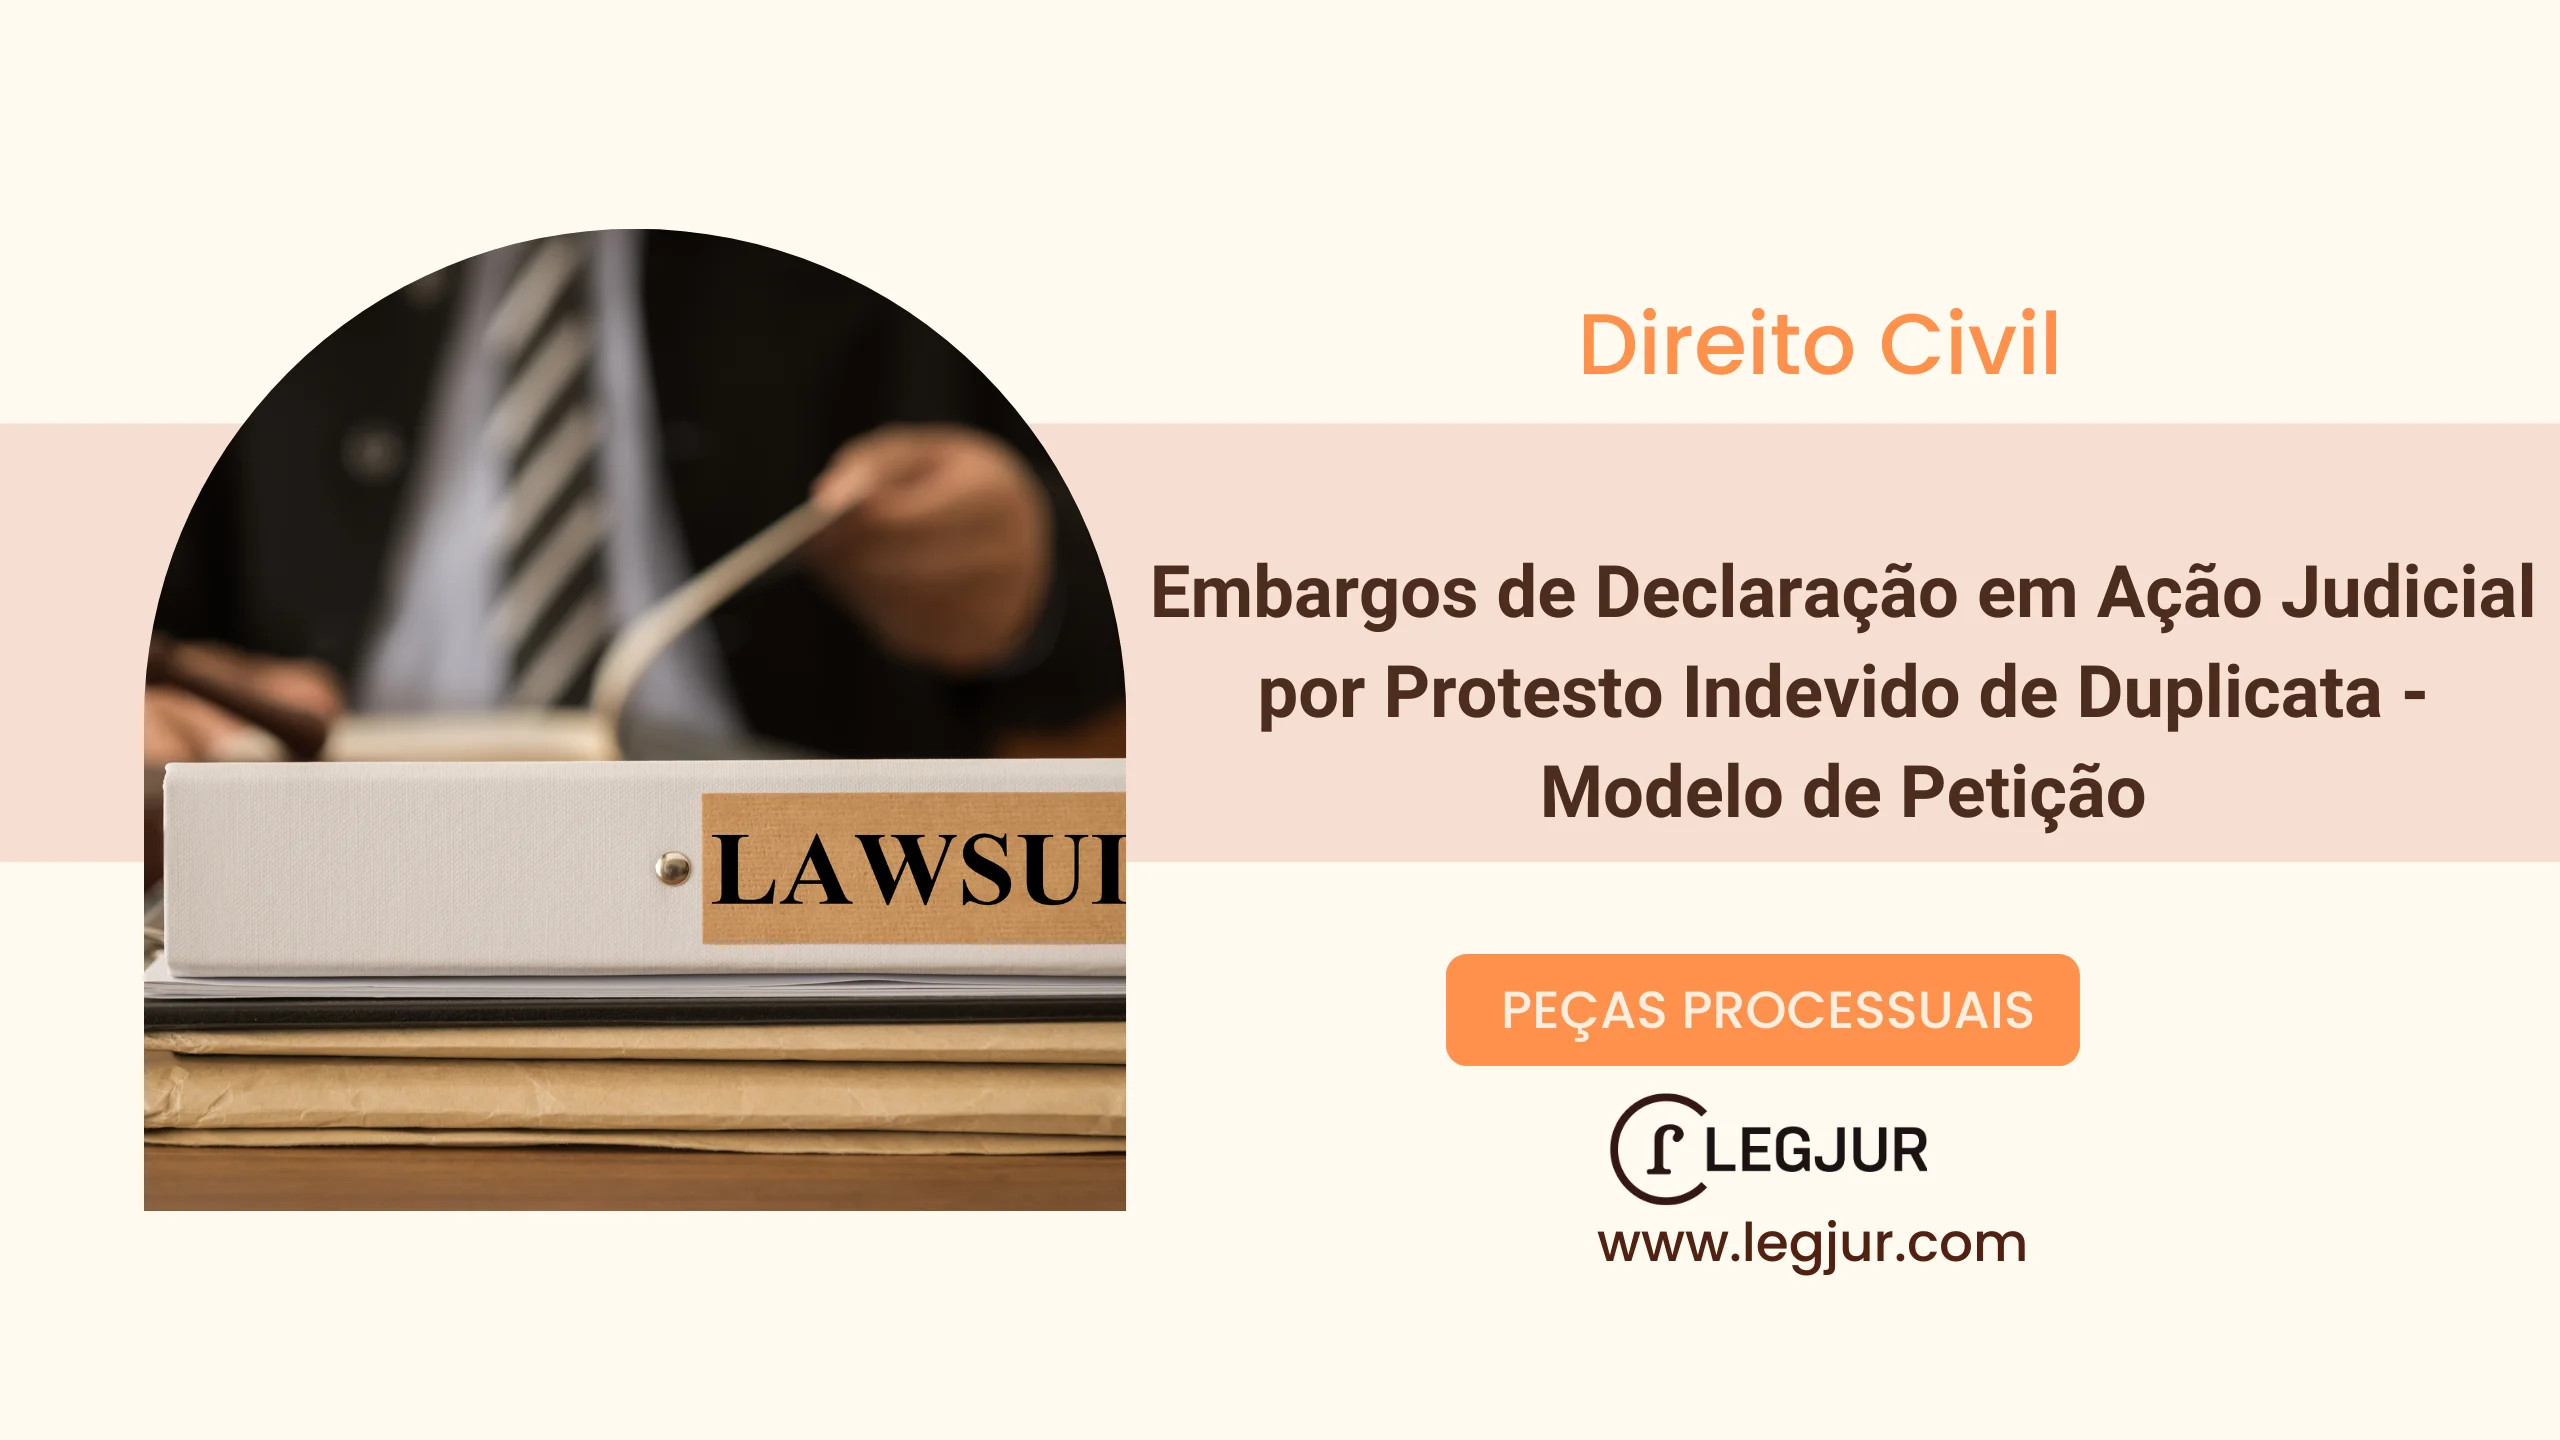 Embargos de Declaração em Ação Judicial por Protesto Indevido de Duplicata - Modelo de Petição